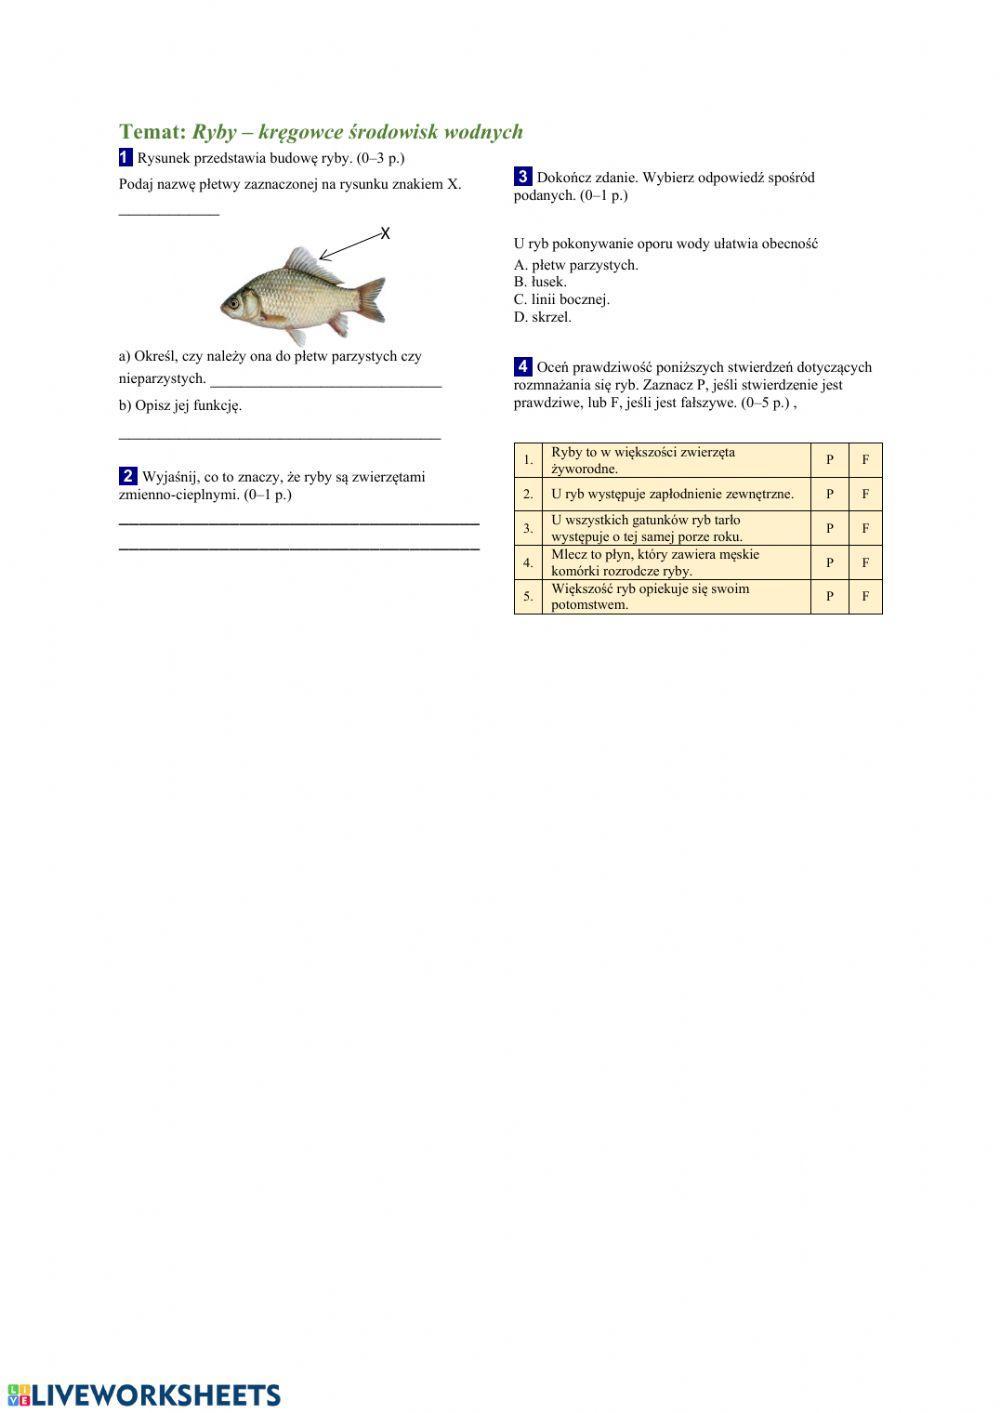 Ryby - kręgowce środowisk wodnych